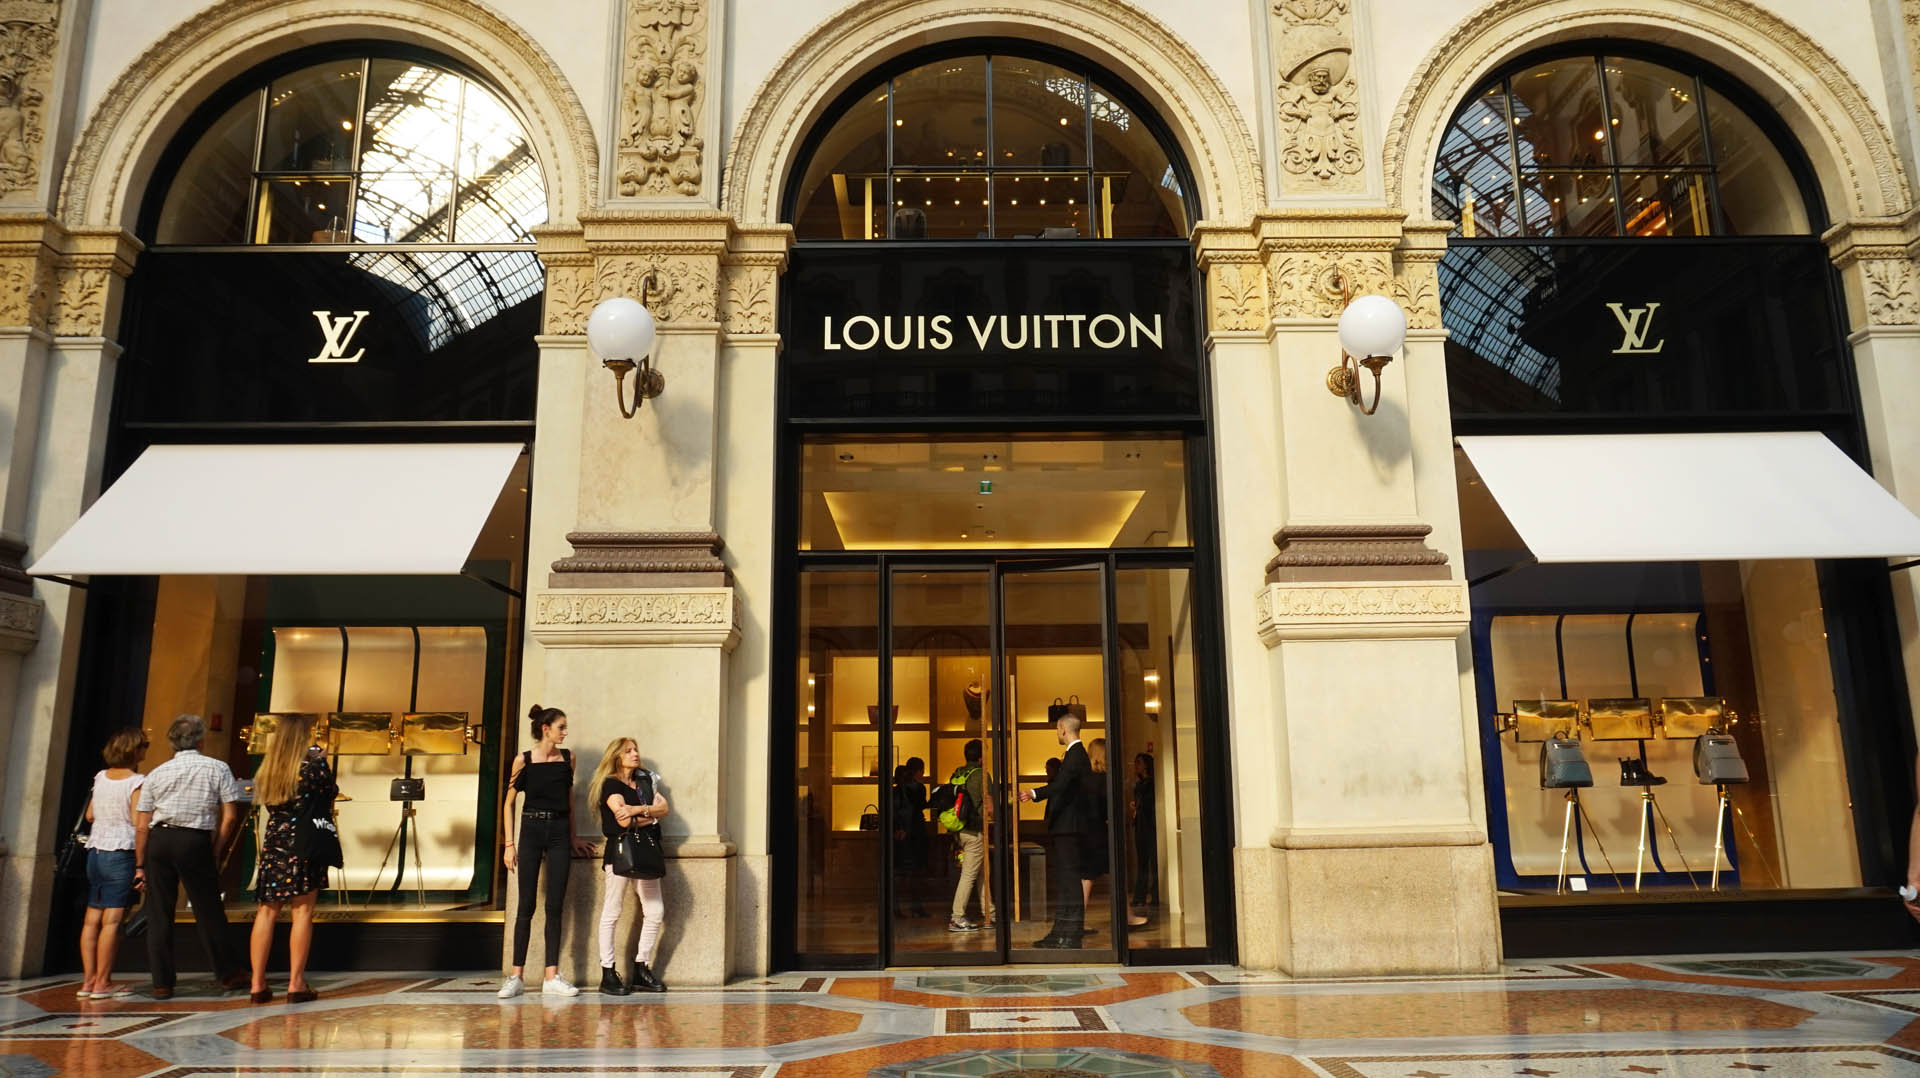 Louis Vuitton  Lee Gardens  soeperbaby  Flickr